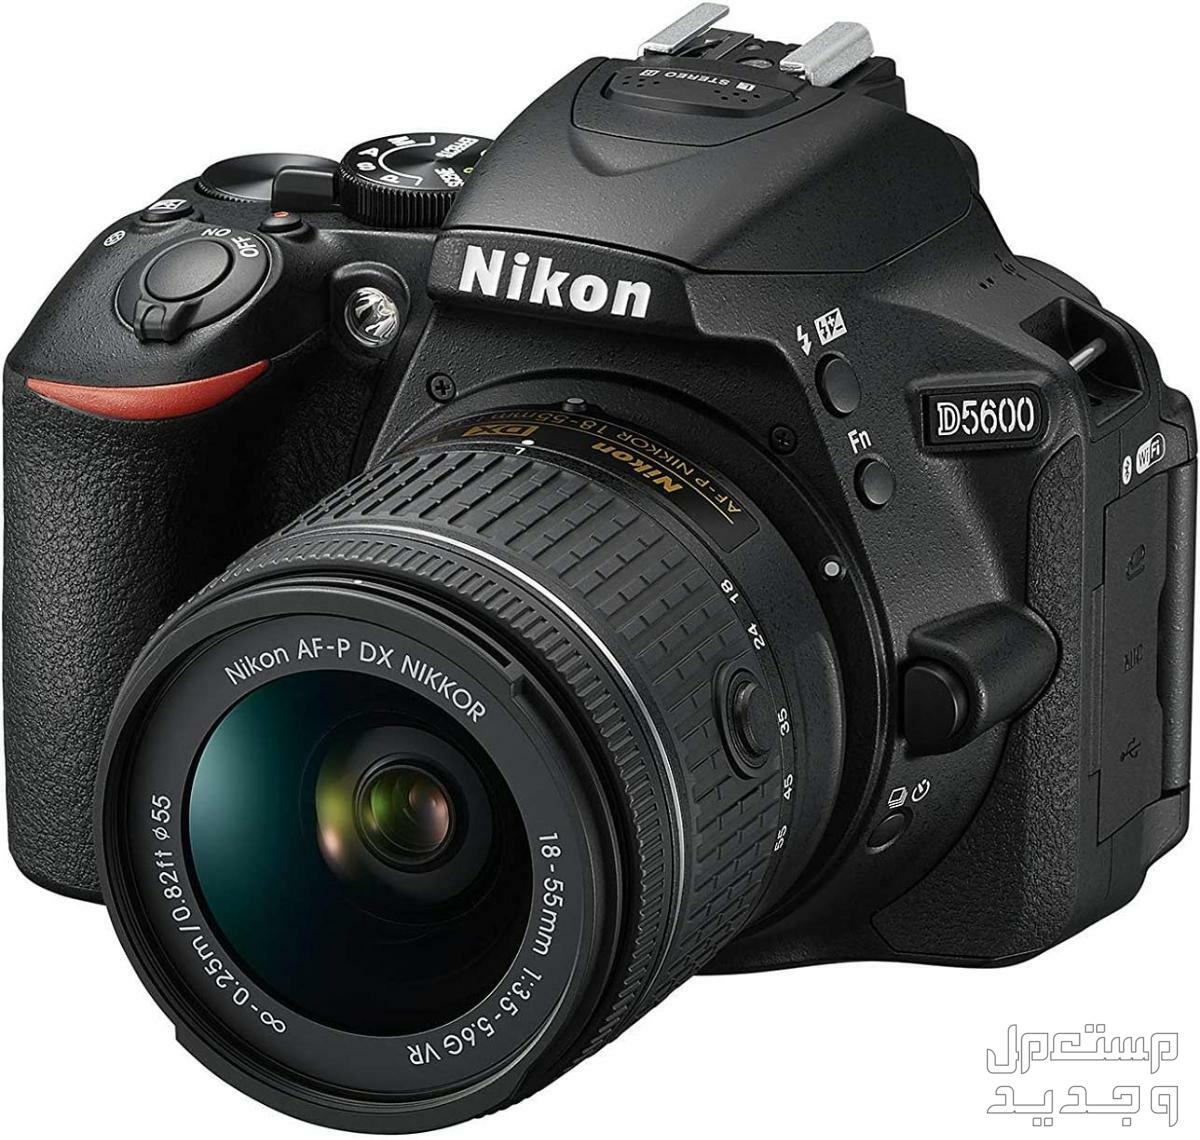 10 كاميرات تصوير ماركات عالمية بأسعار رخيصة في سوريا كاميرا Nikon D5600